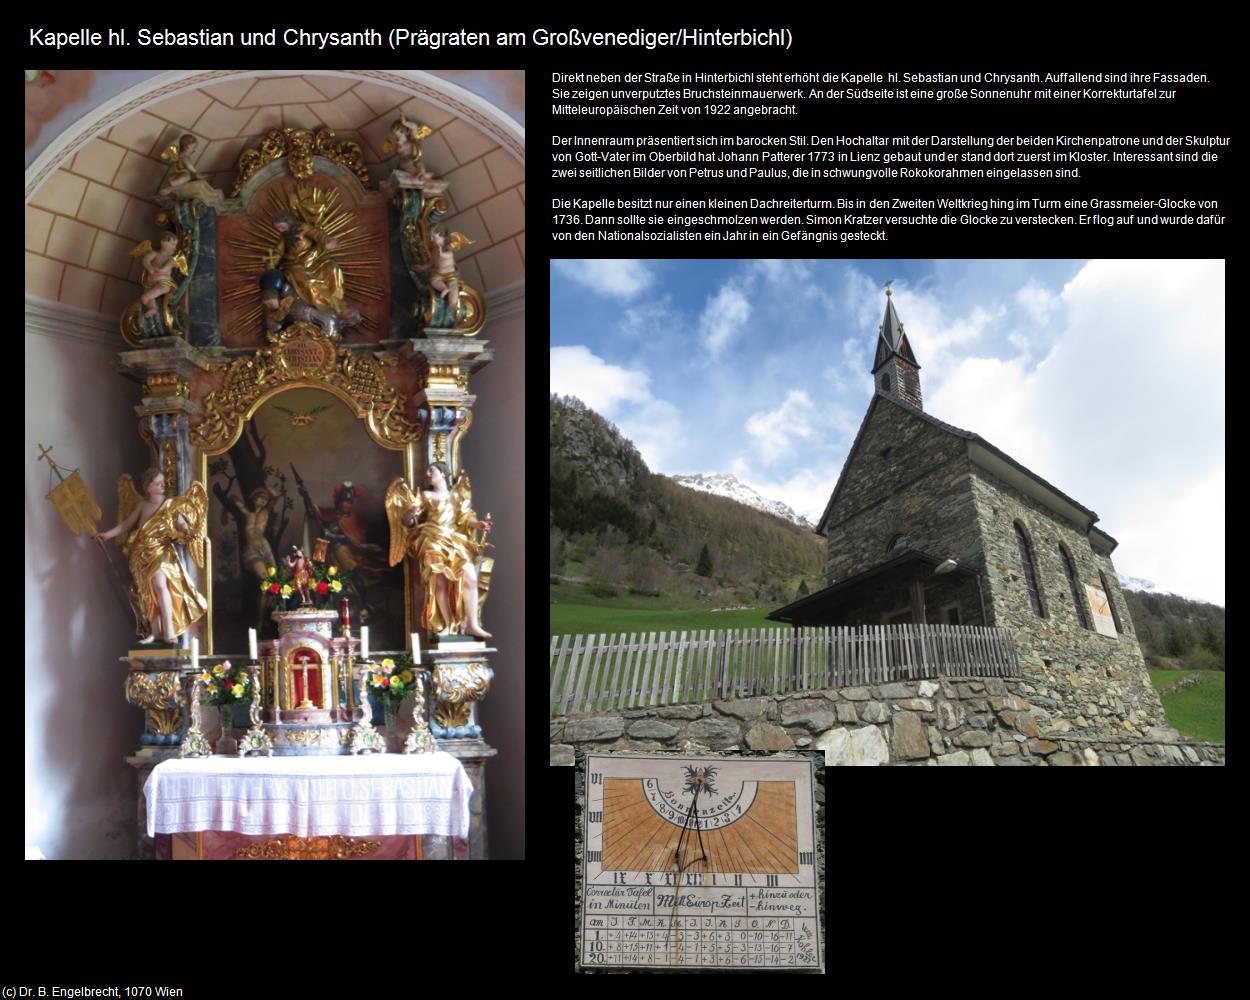 Kapelle hl. Sebastian und Chrysanth (Hinterbichl) (Prägraten am Großvenediger) in Kulturatlas-TIROL